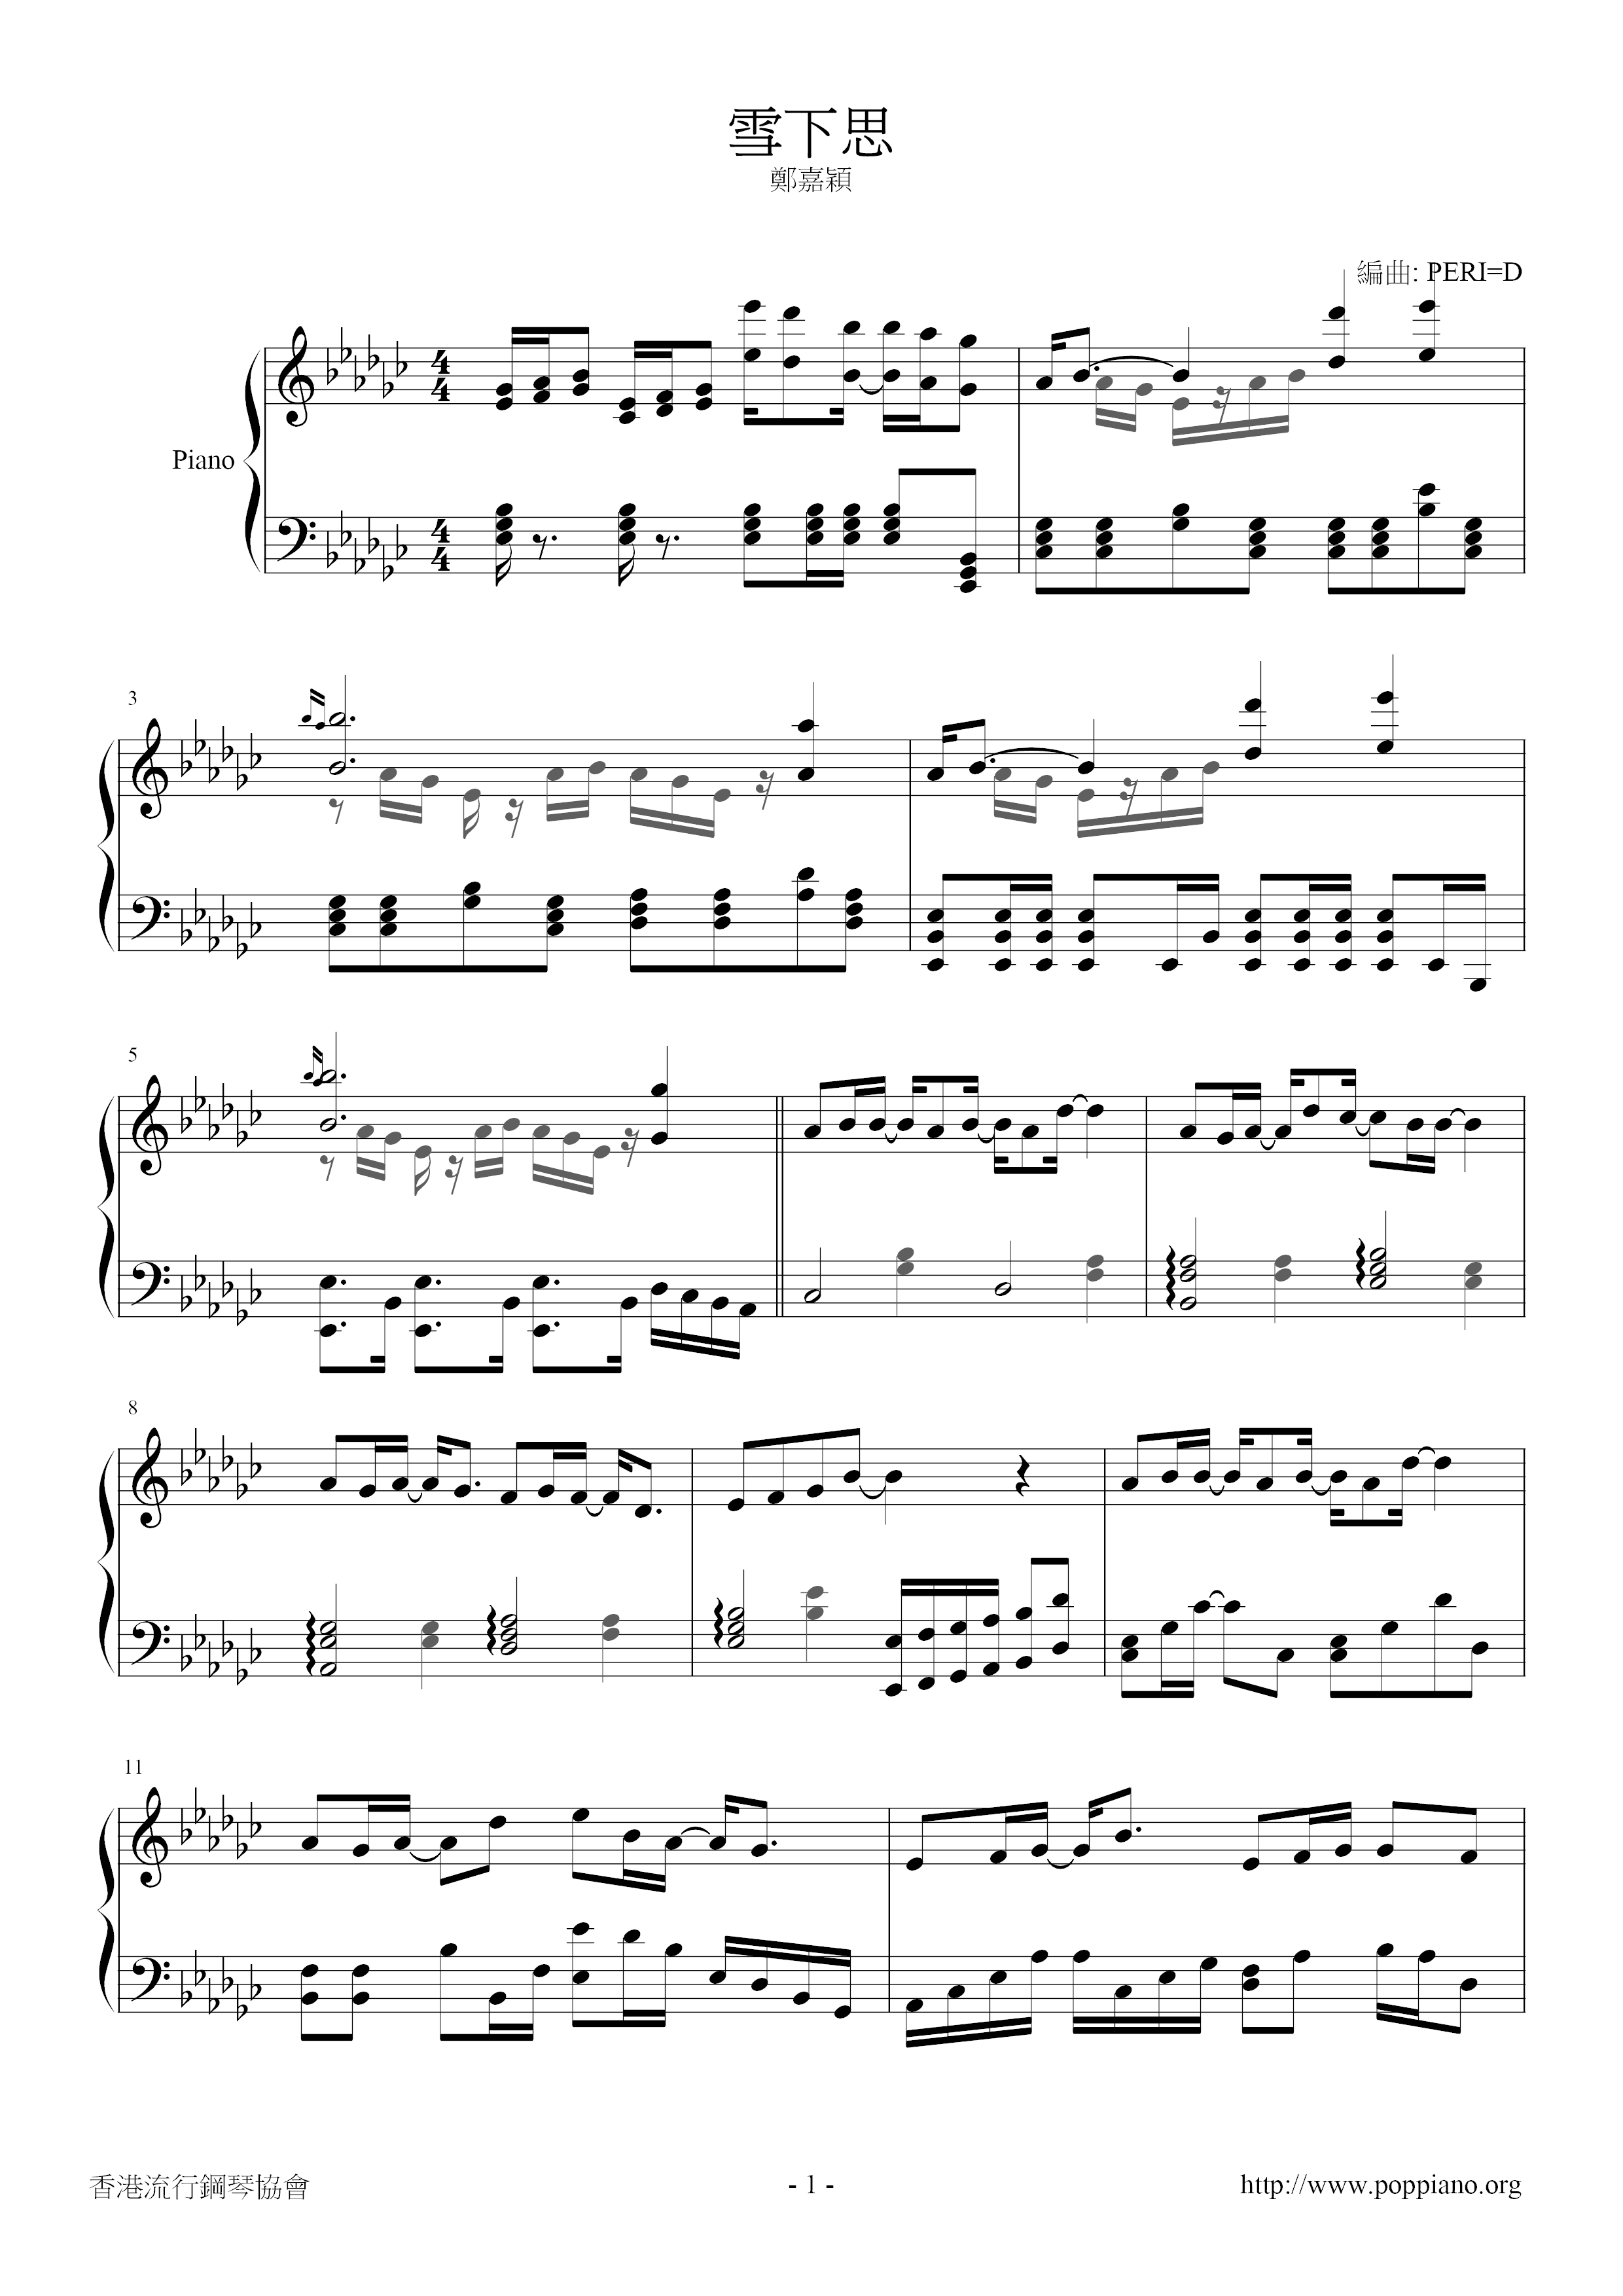 Xuexiasi Score